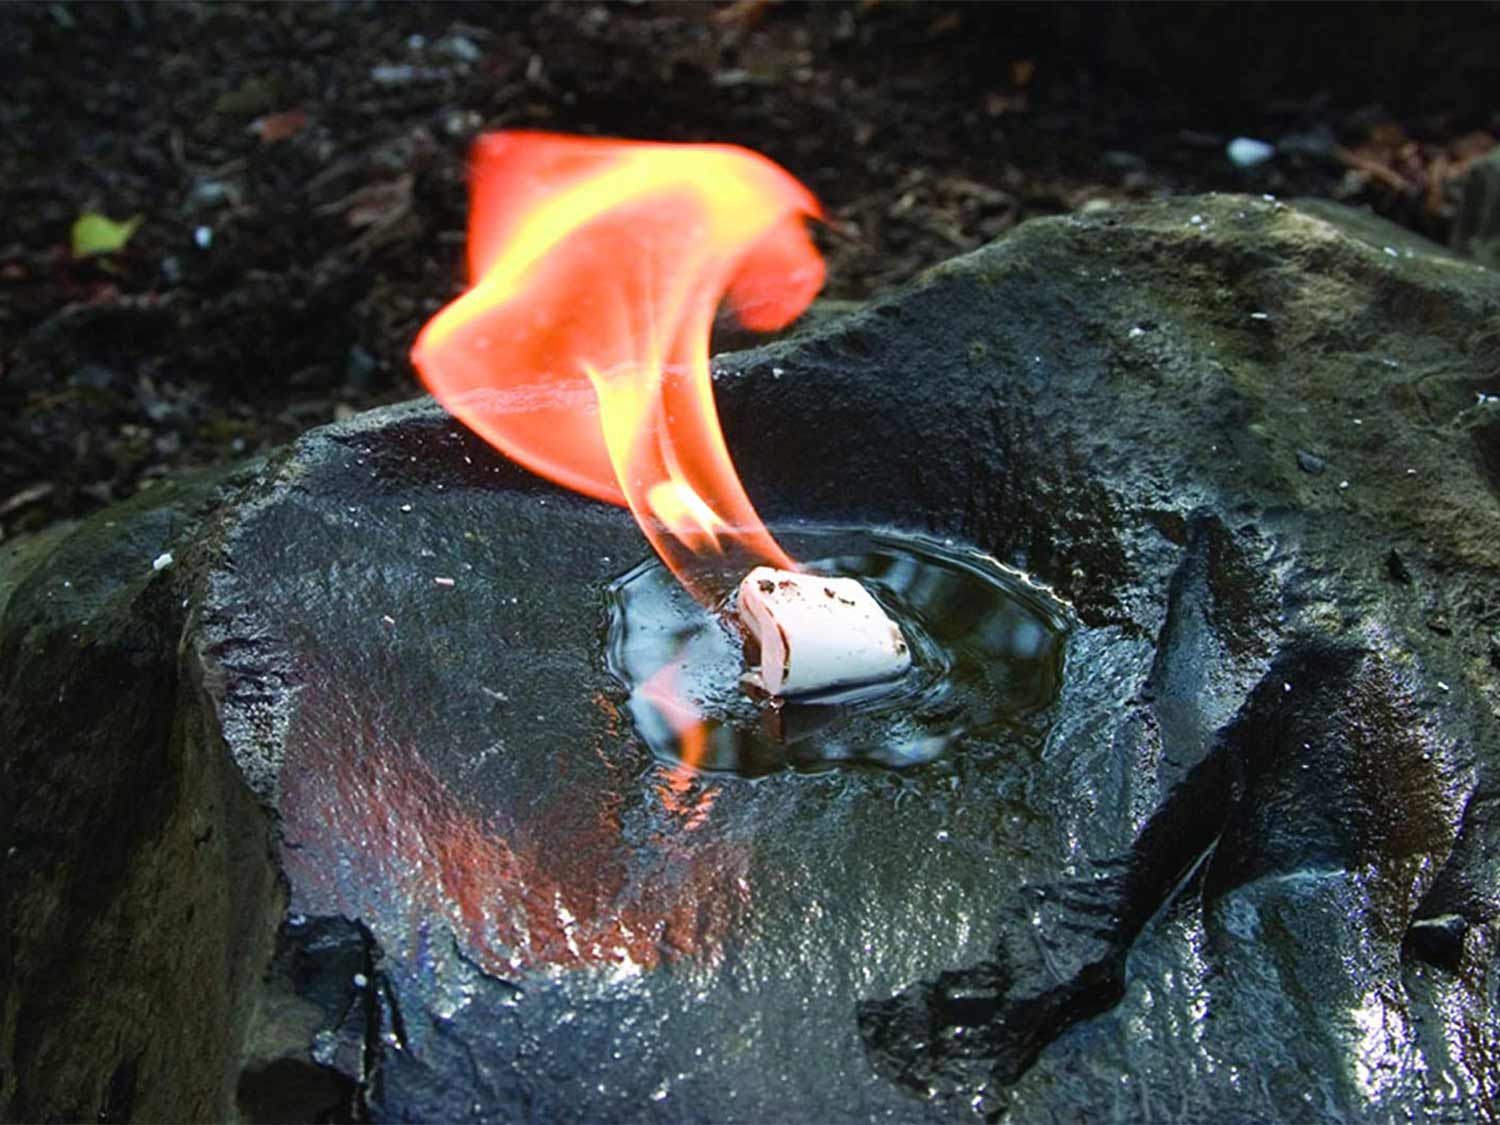 A WetFire cube in water on fire.